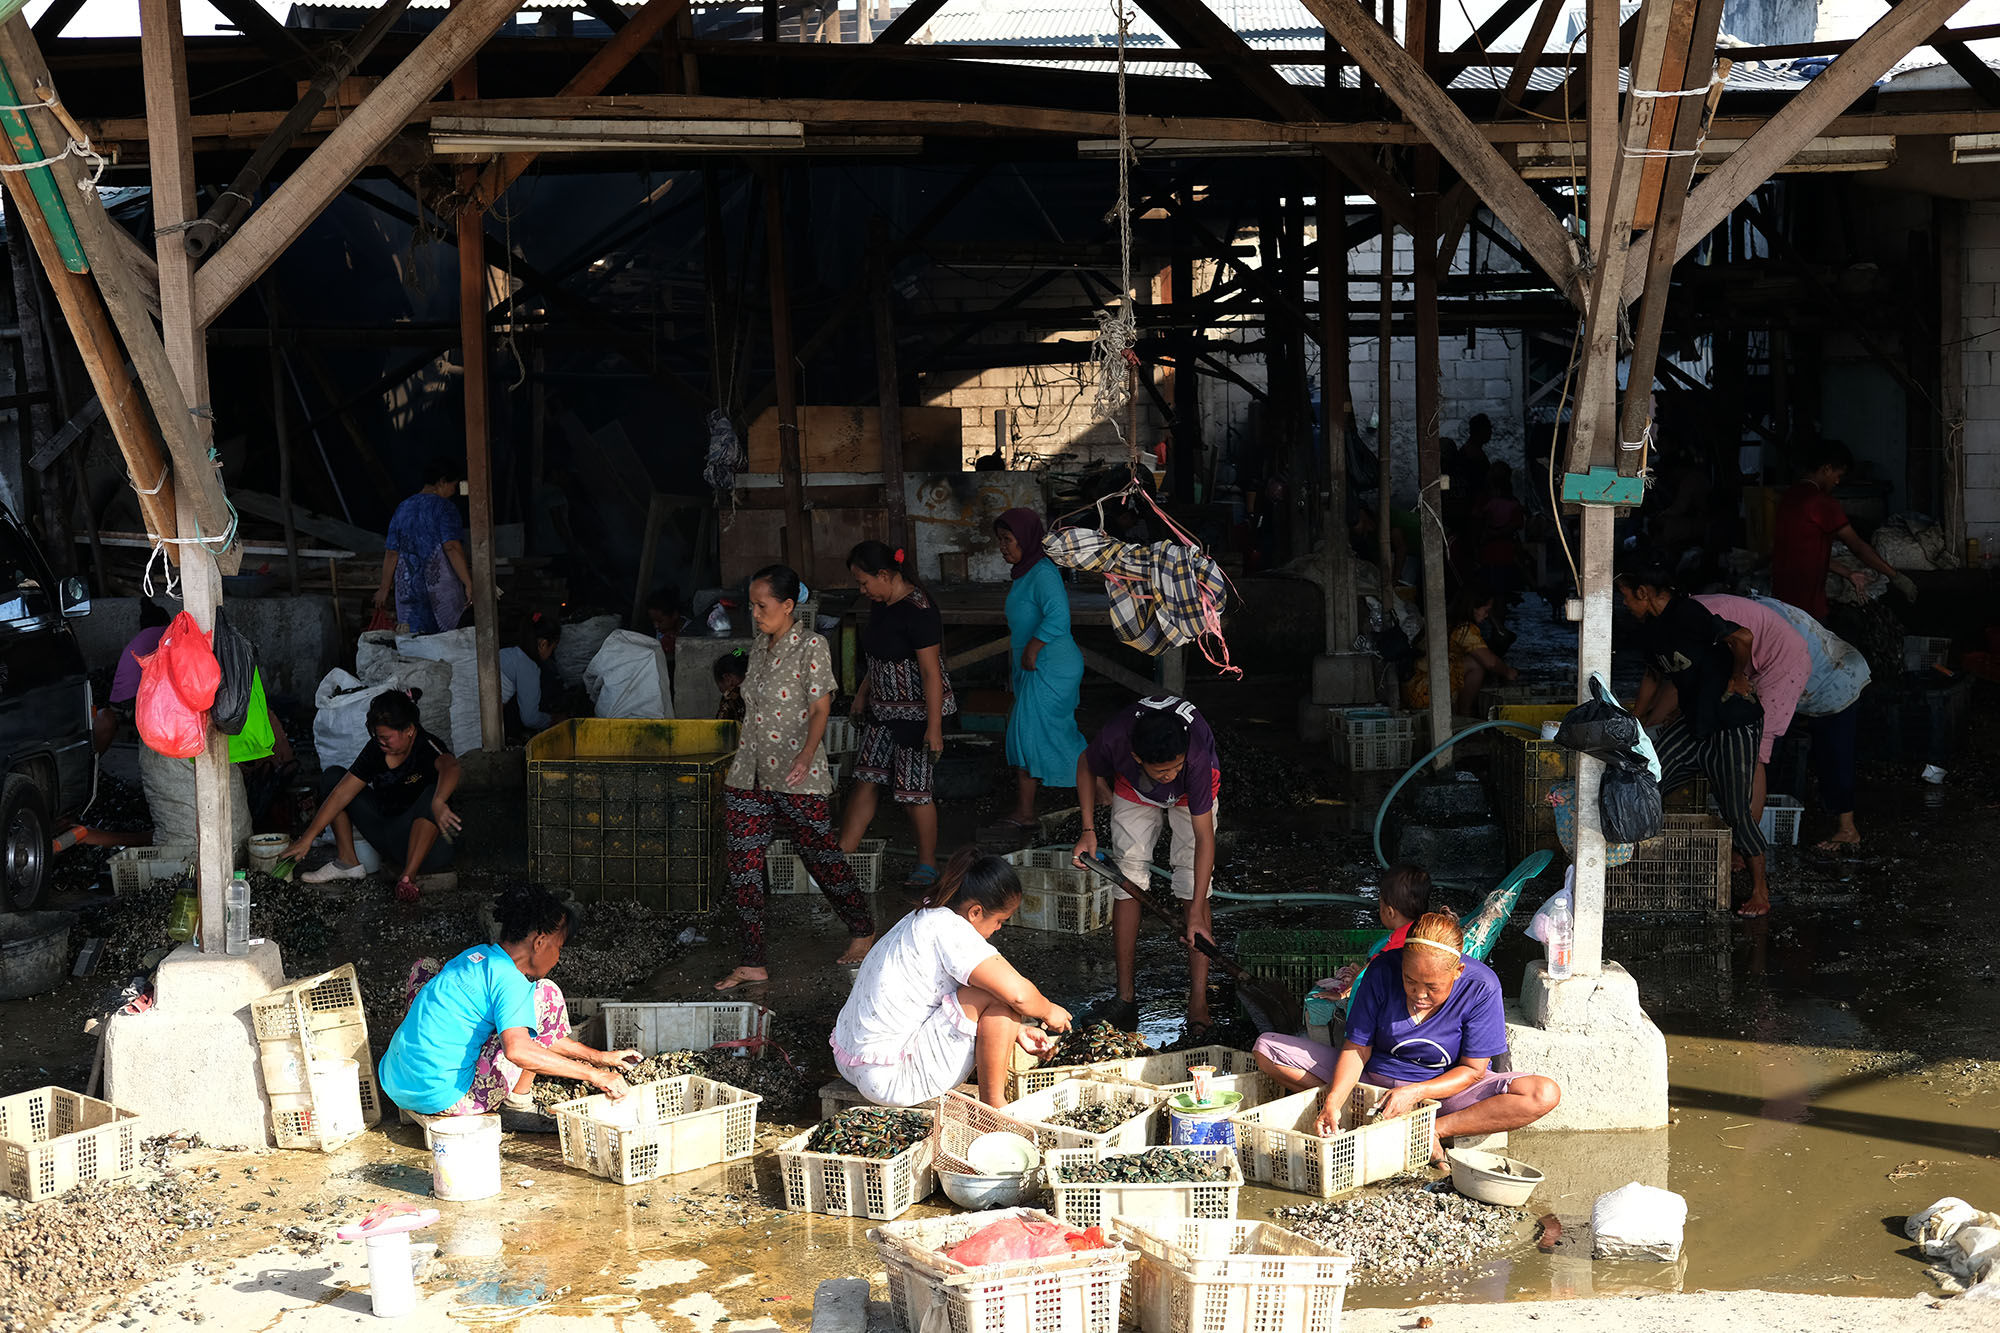 <p>Aktivitas pekerja disalah satu tempat produksi kerang hijau di perkampungan nelayan kawasan Cilincing, Jakarta Utara, Minggu, 26 Juli 2020. Warga dan nelayan mengaku dampak pembatasan sosial berskala besar (PSBB) akibat pandemi COVID-19 sangat berpengaruh terhadap perekonomian warga pesisir Jakarta Utara. Harga jual hasil laut nelayan merosot tajam, seperti harga jual ikan berkurang hingga setengah harga normal. Foto: Ismail Pohan/TrenAsia</p>
